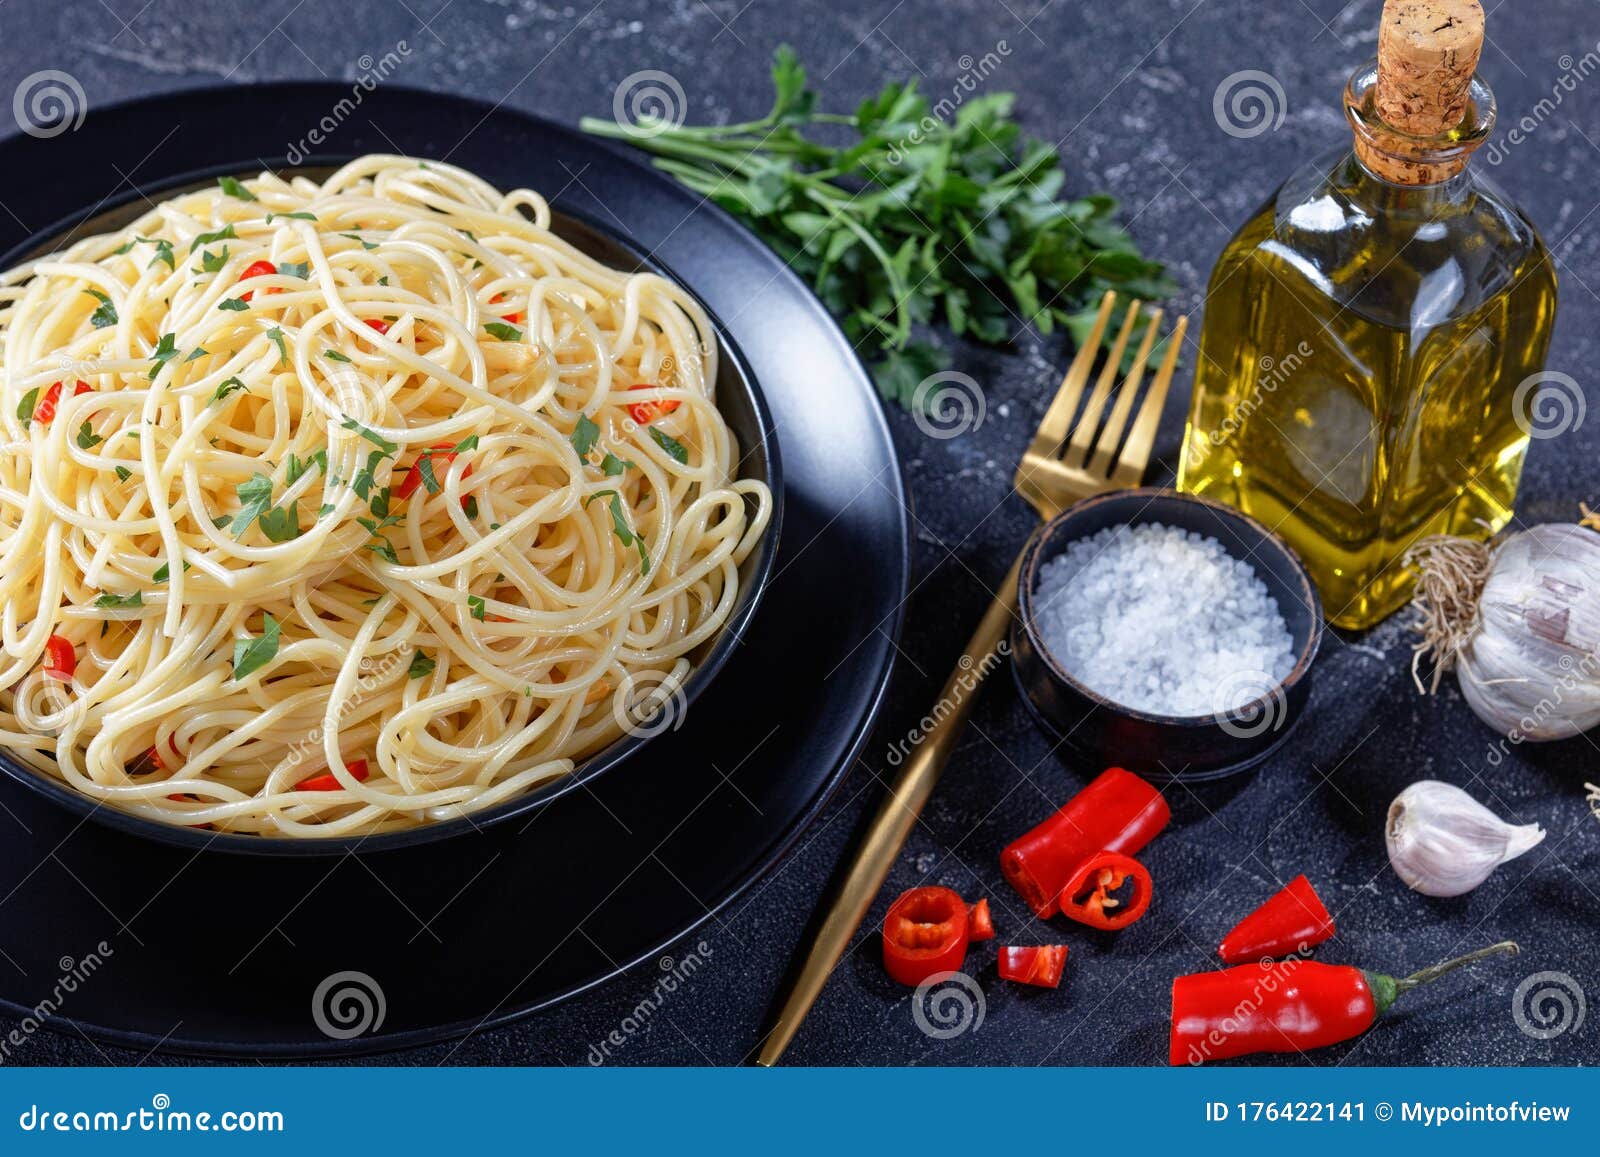 pasta aglio, olio e peperoncino in a bowl